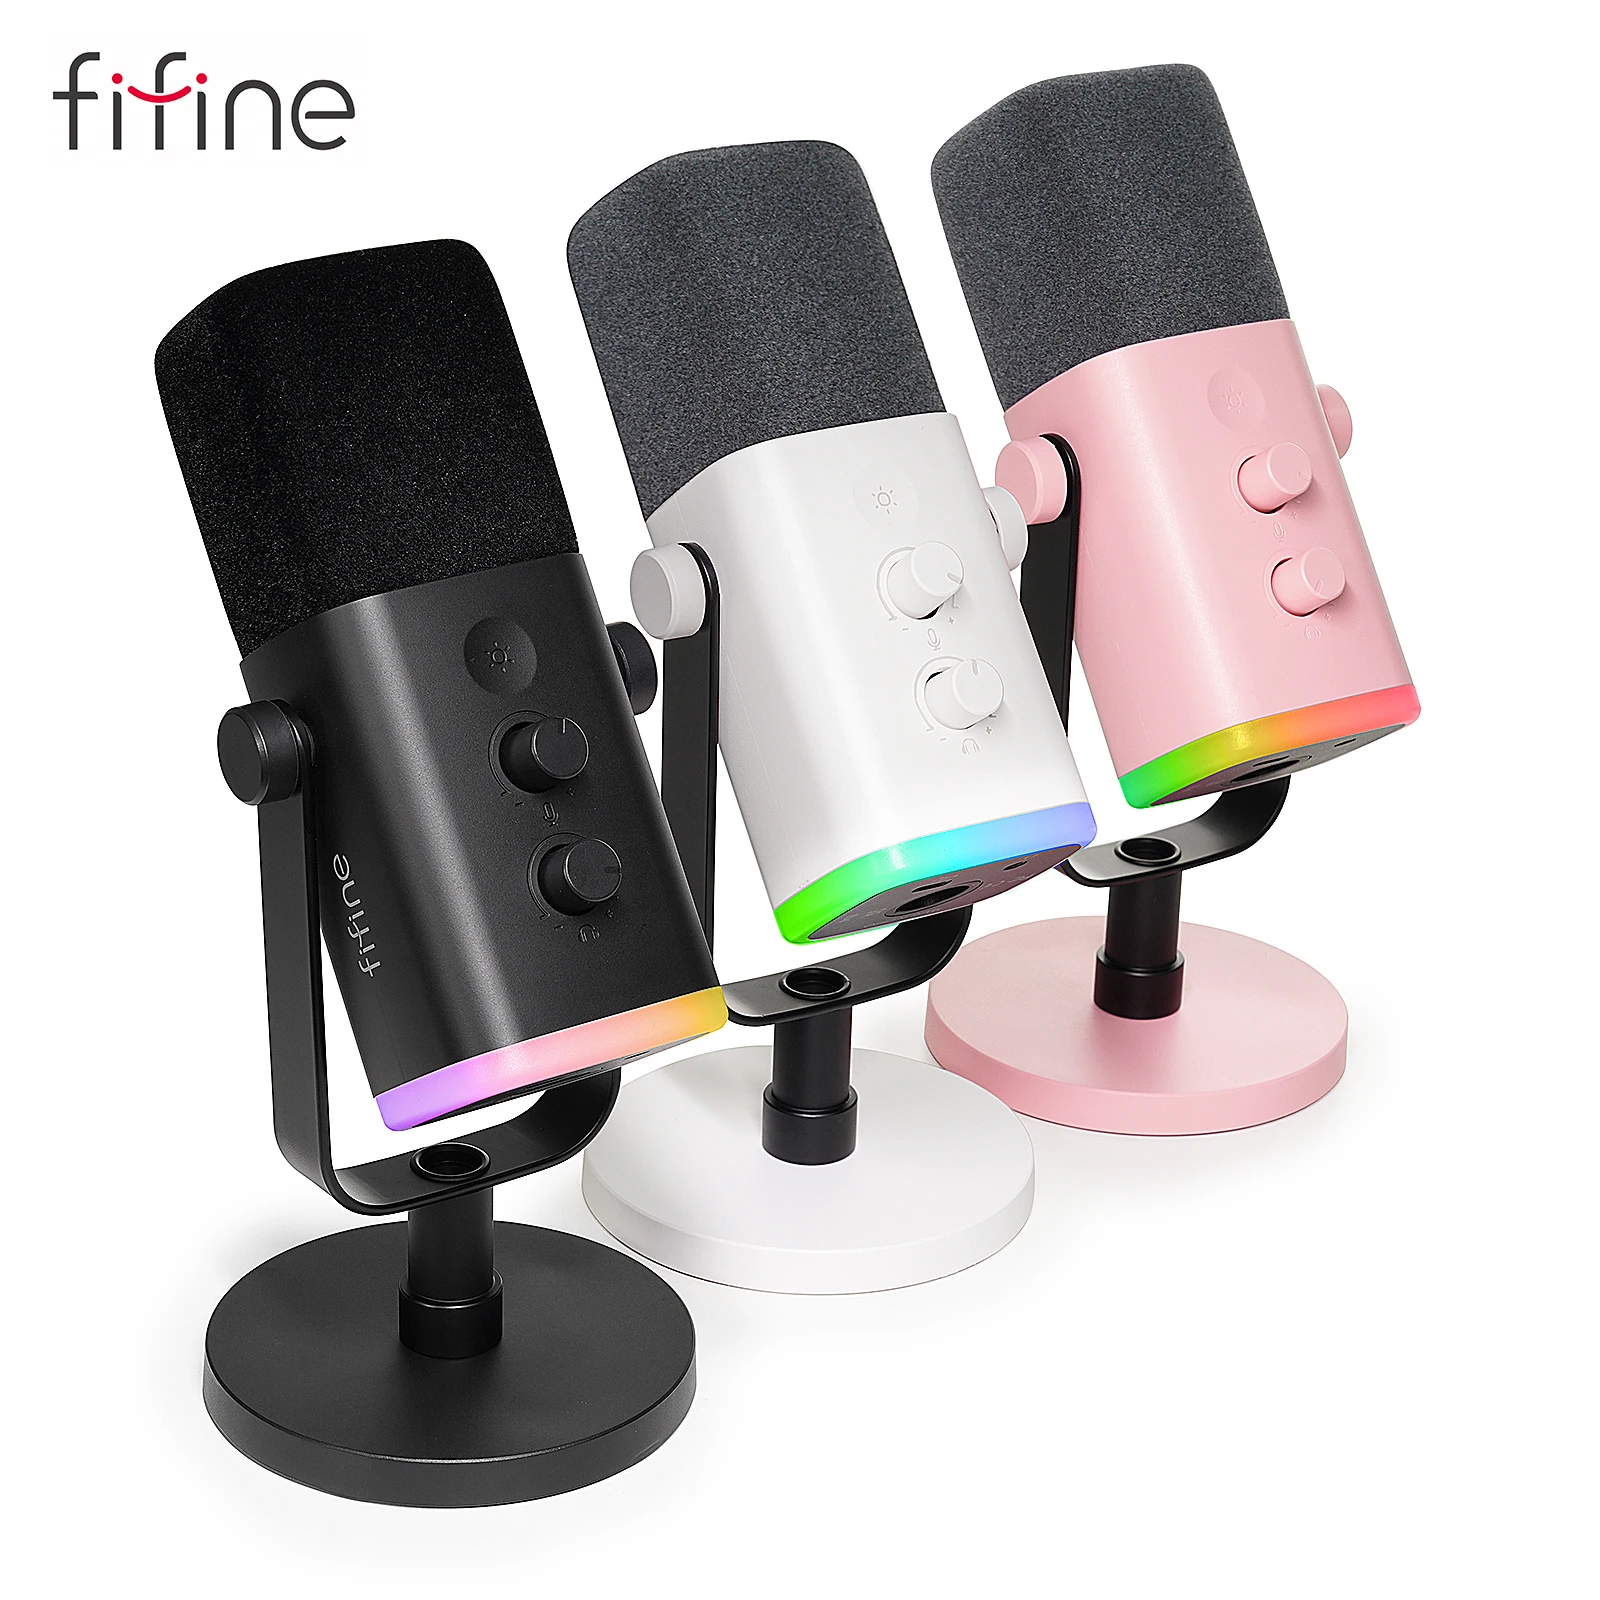 fifine am8 xlr dynamic microphone usb